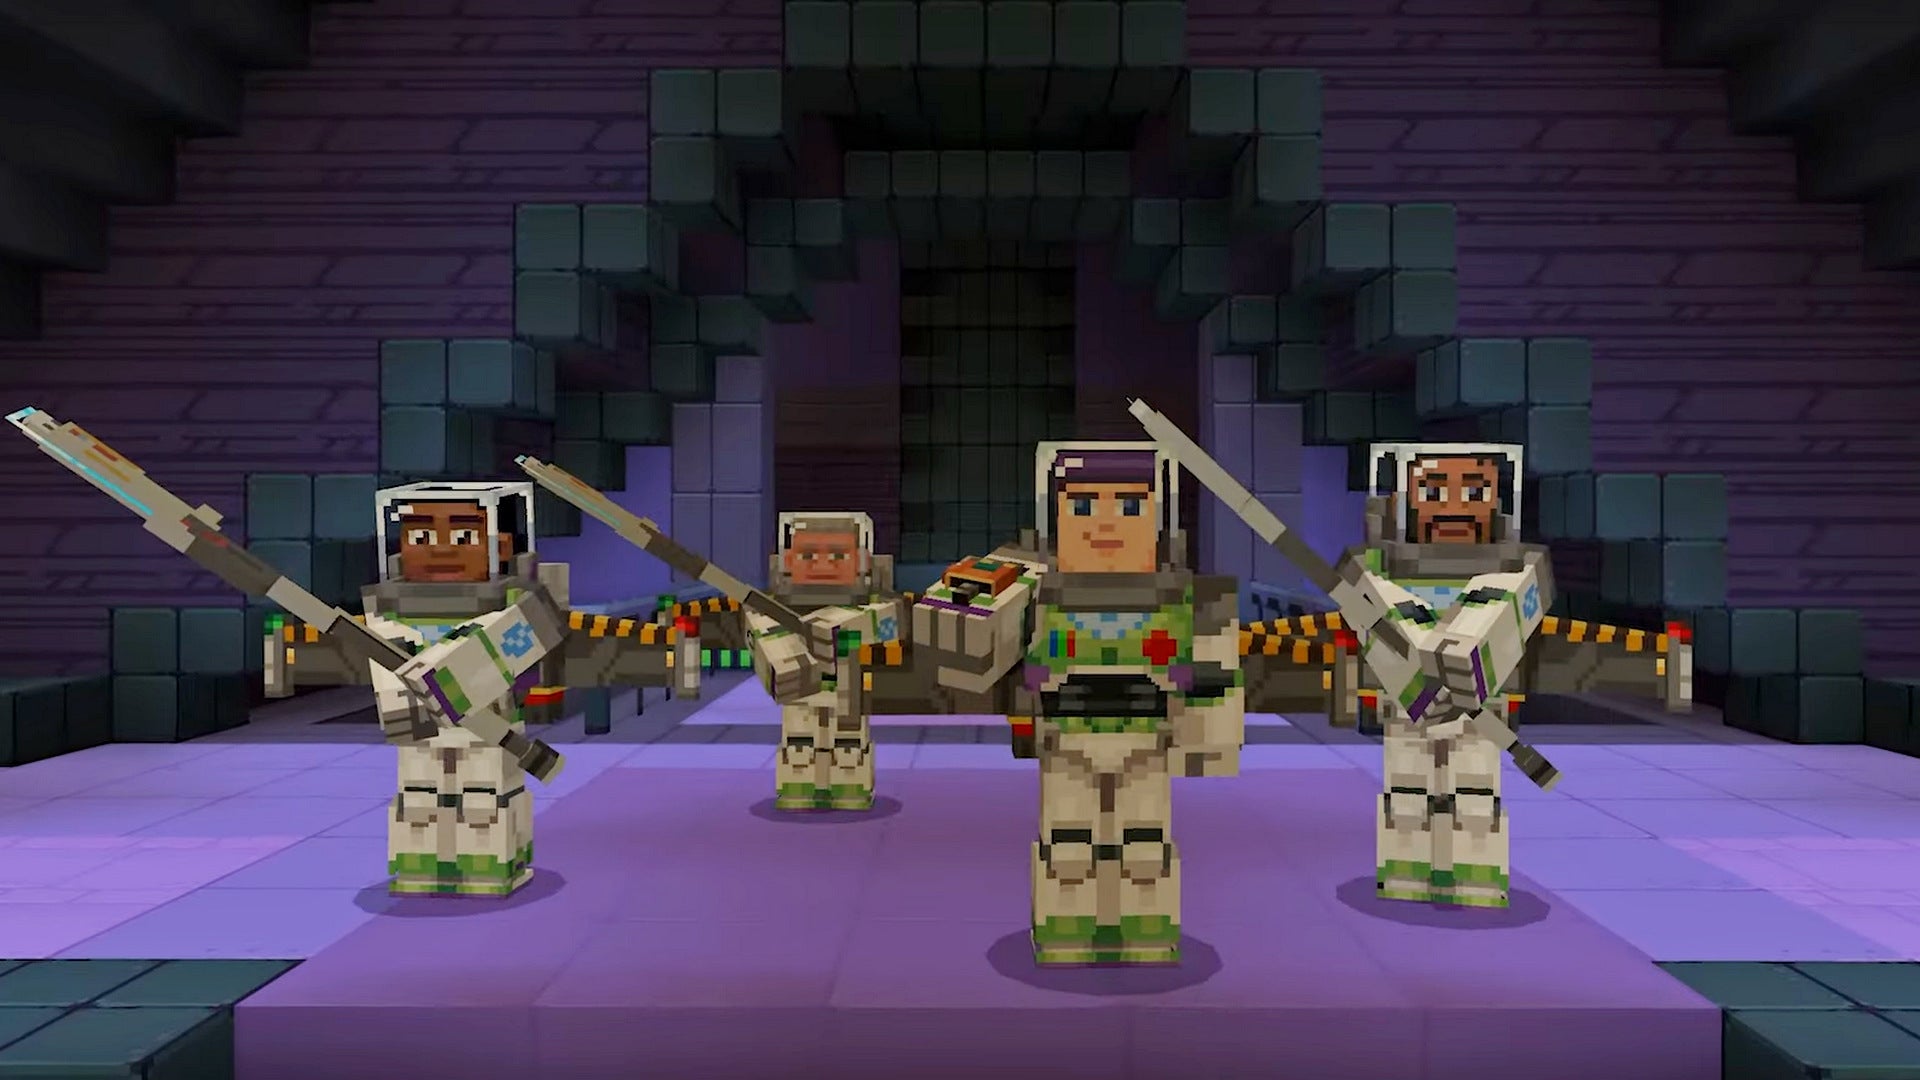 Bilder zu Minecraft: Buzz Lightyear kommt mit neuem DLC ins Spiel